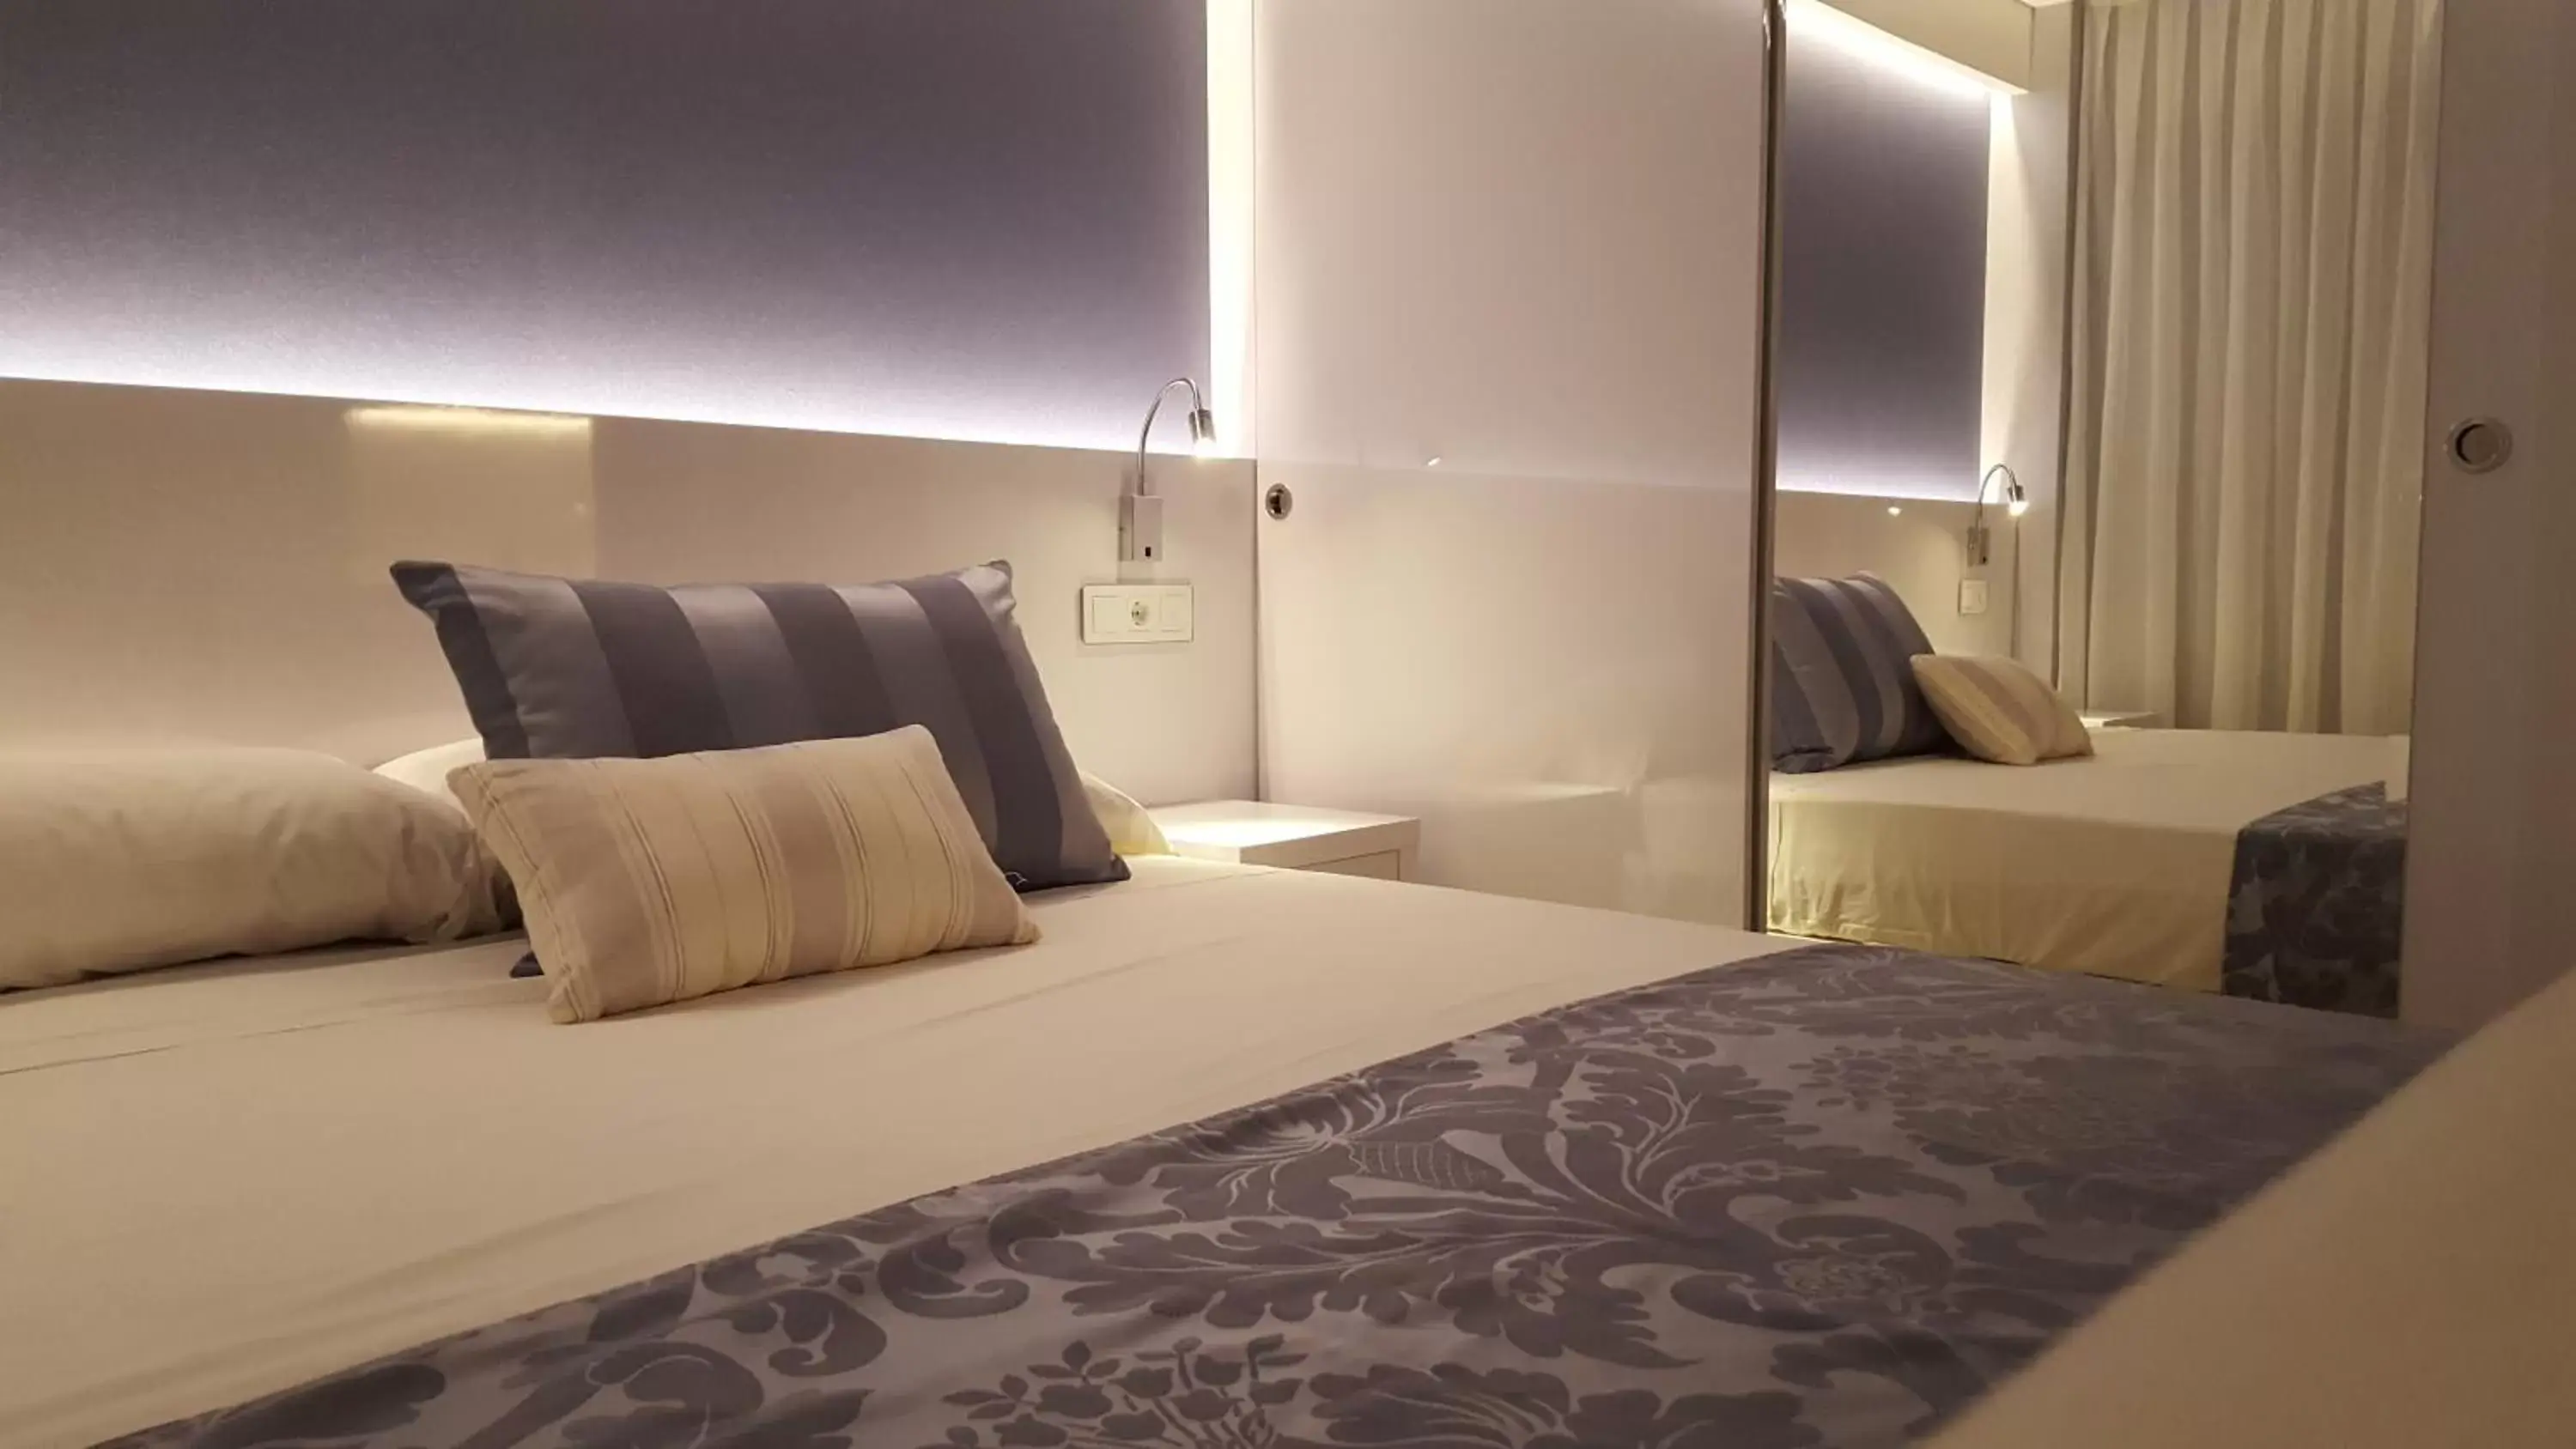 Bed, Room Photo in Masd Mediterraneo Hotel Apartamentos Spa